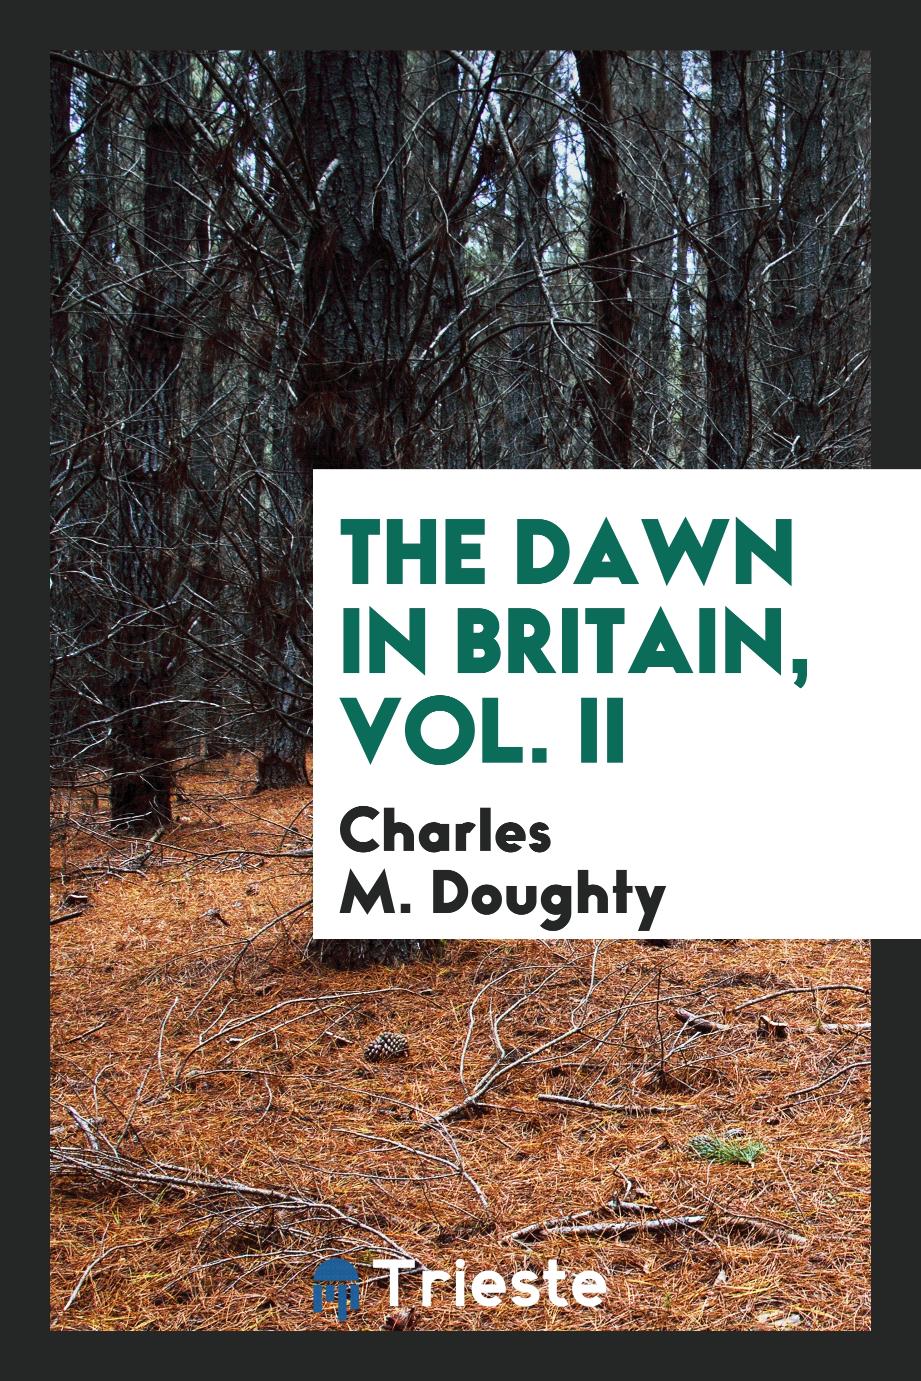 The dawn in Britain, Vol. II